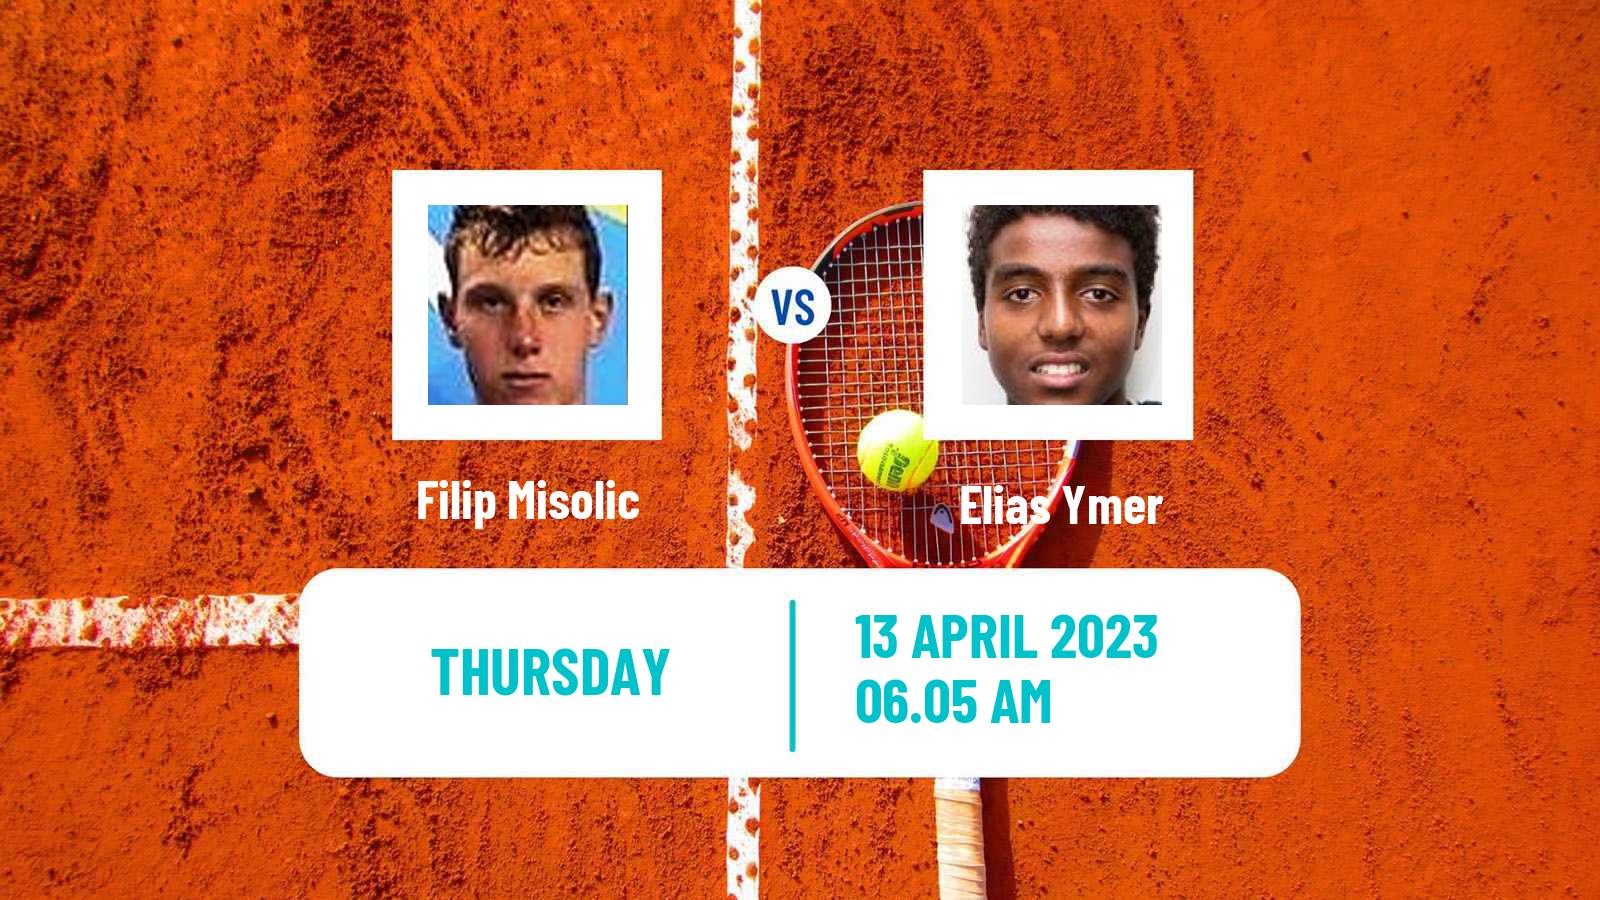 Tennis ATP Challenger Filip Misolic - Elias Ymer